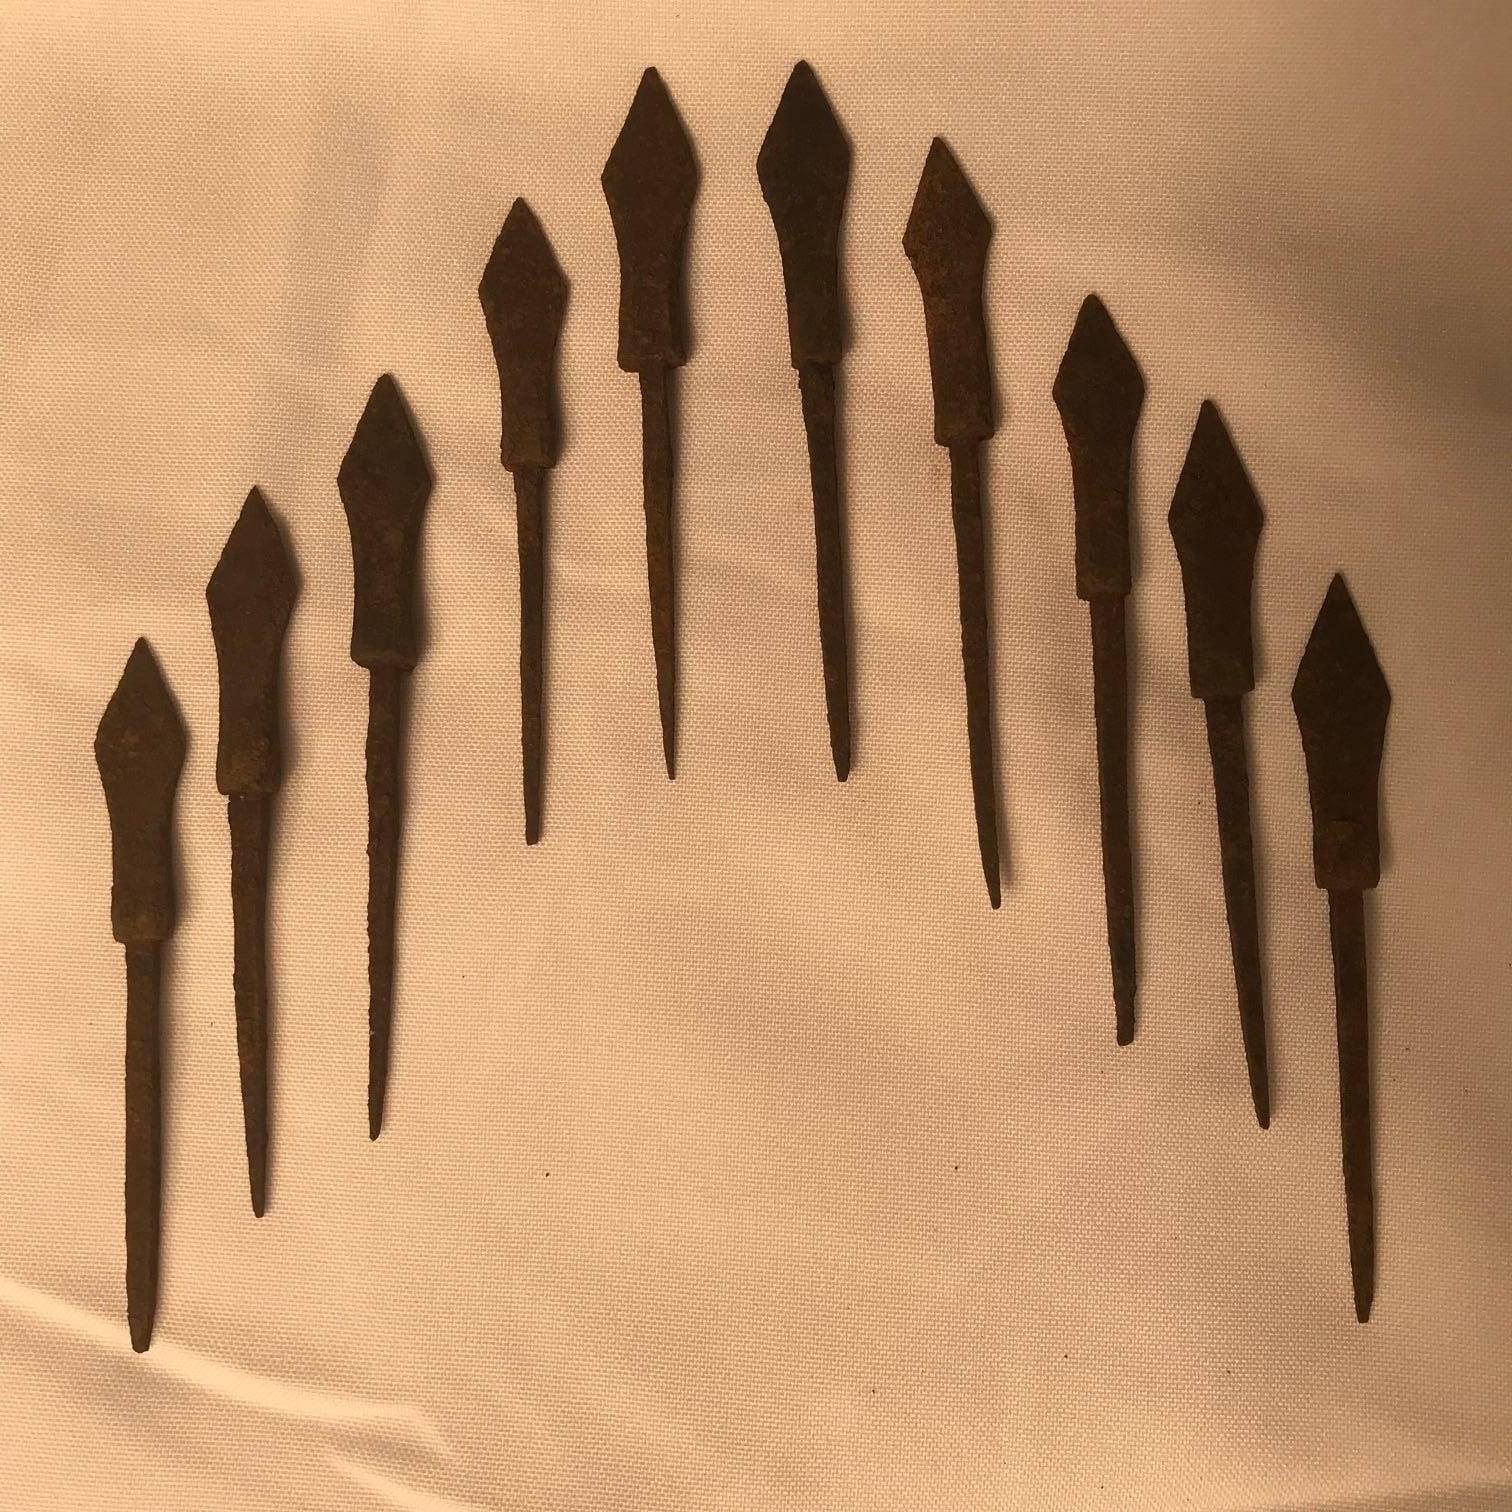 ten arrows of iron